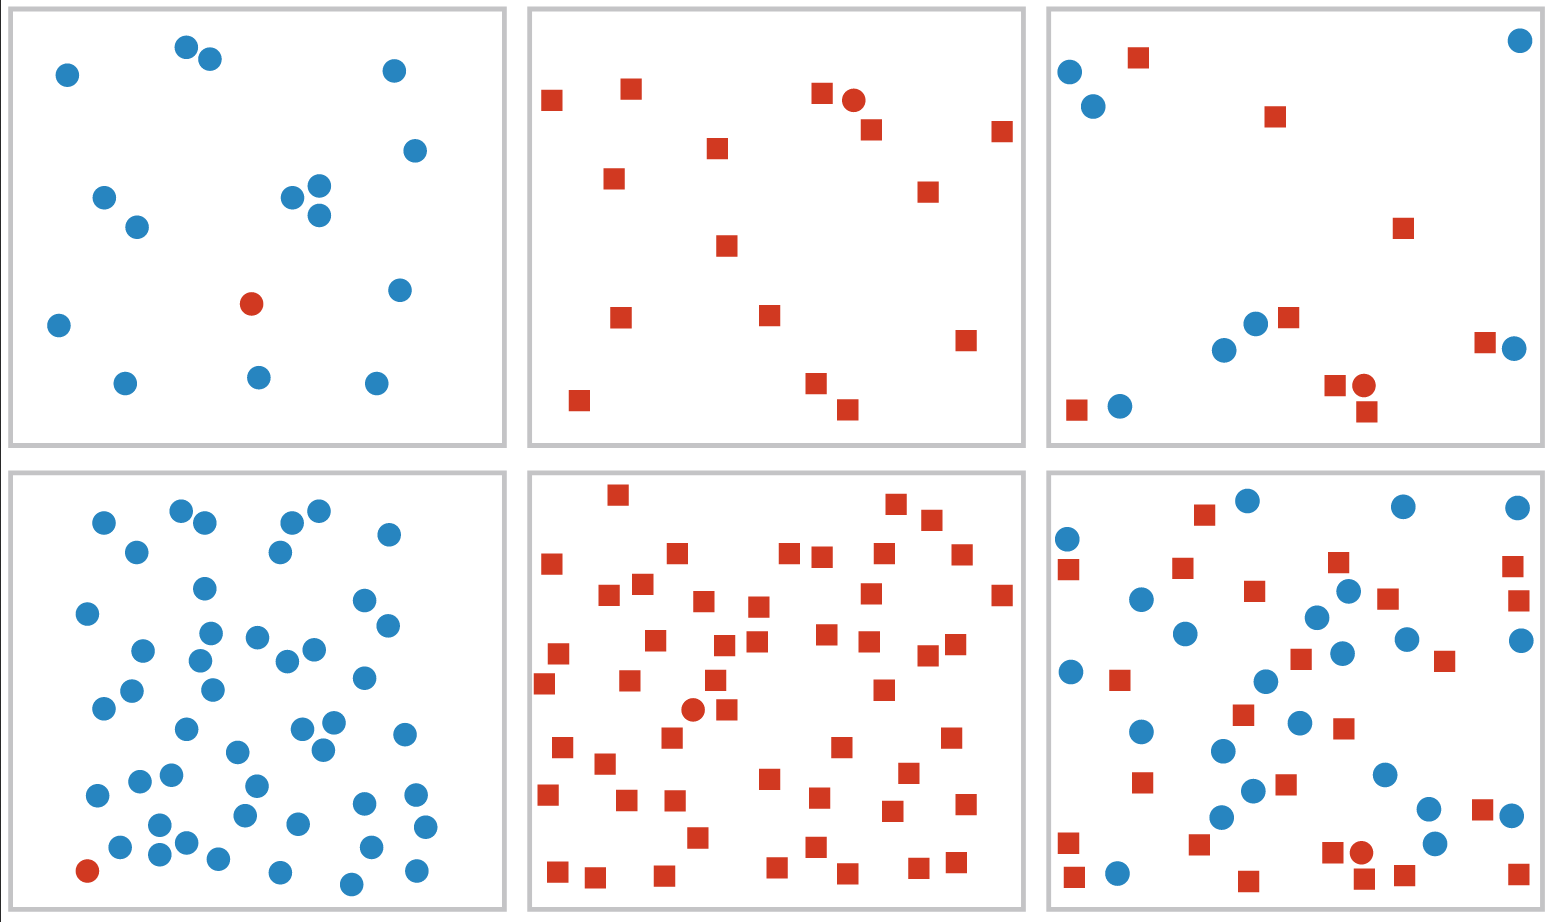 ¡Encuentra el punto rojo! Fuente: Visualization Analysis & Design.